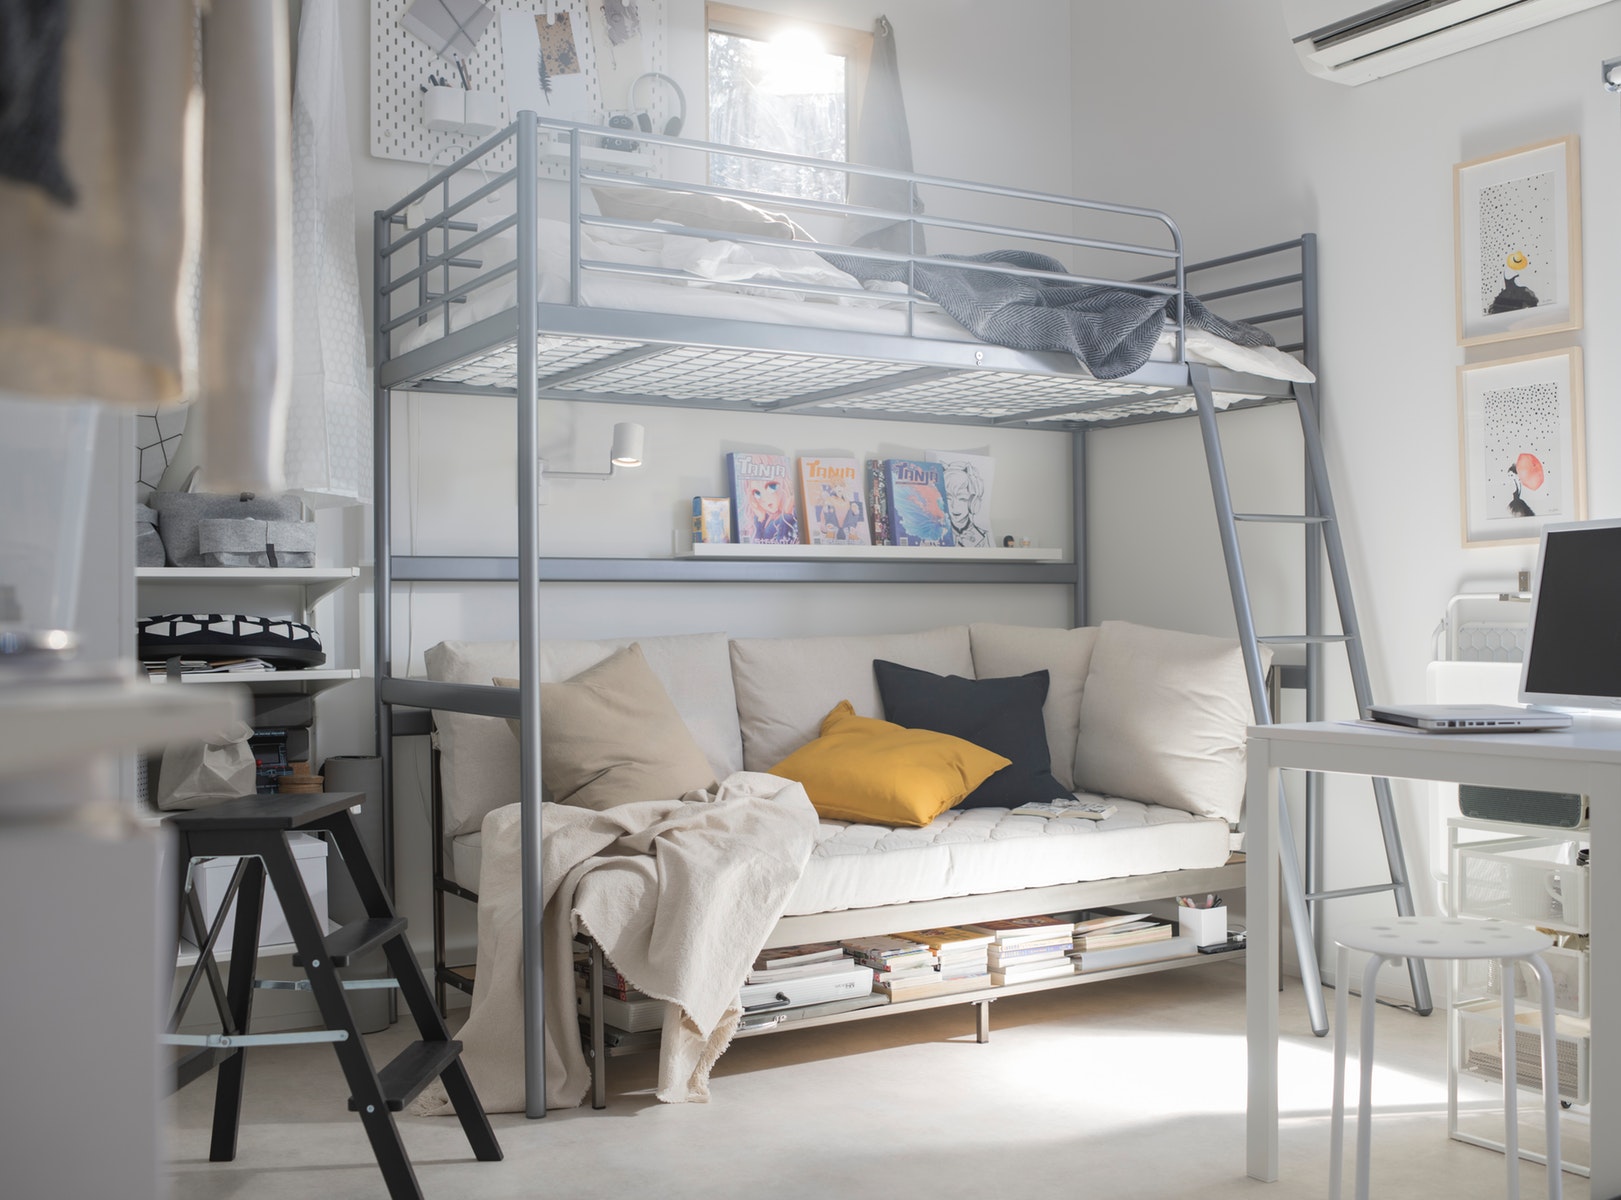 9 Inspirasi Desain Kamar Loft Bunk Bed | Cocok untuk Kamar Minimalis